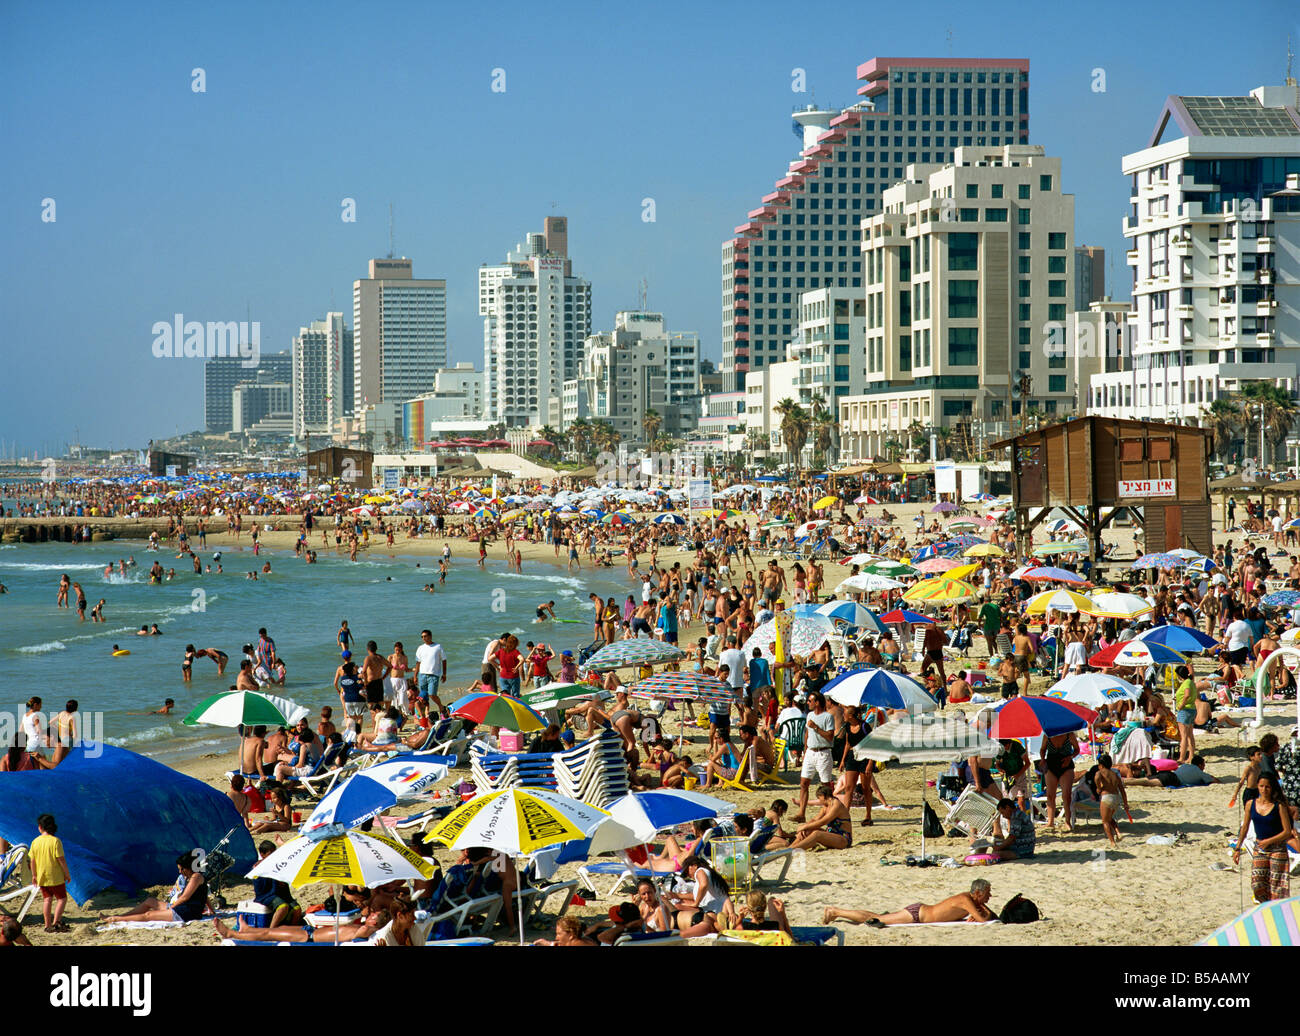 La folla di turisti sulla spiaggia con alti edifici sul lungomare, a Tel Aviv, Israele, Medio Oriente Foto Stock